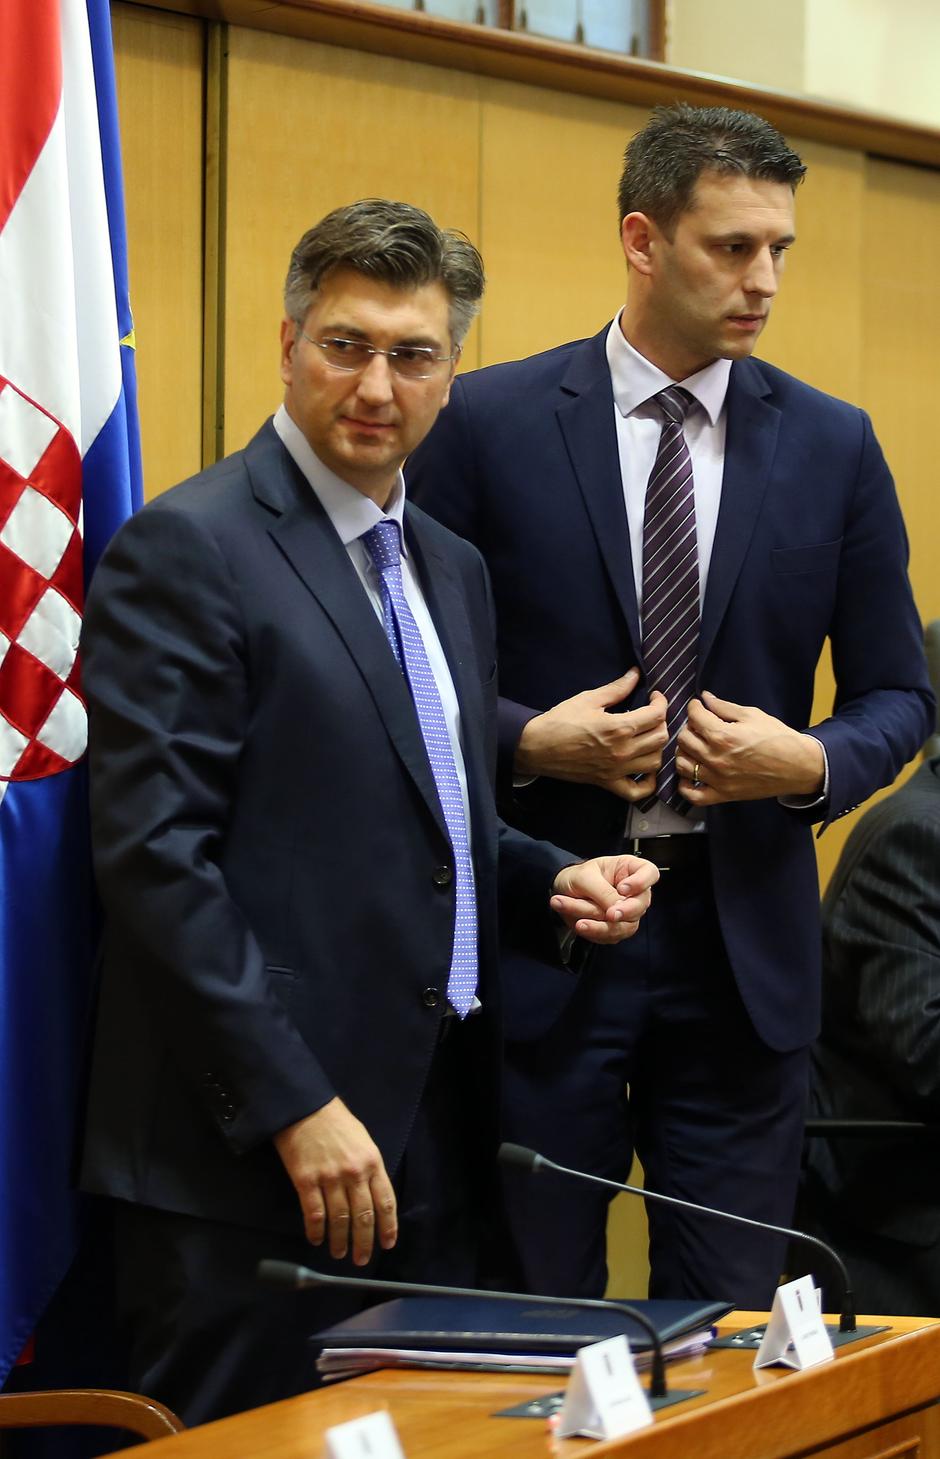 Andrej Plenković i Božo Petrov | Author: Jurica Galoic (PIXSELL)